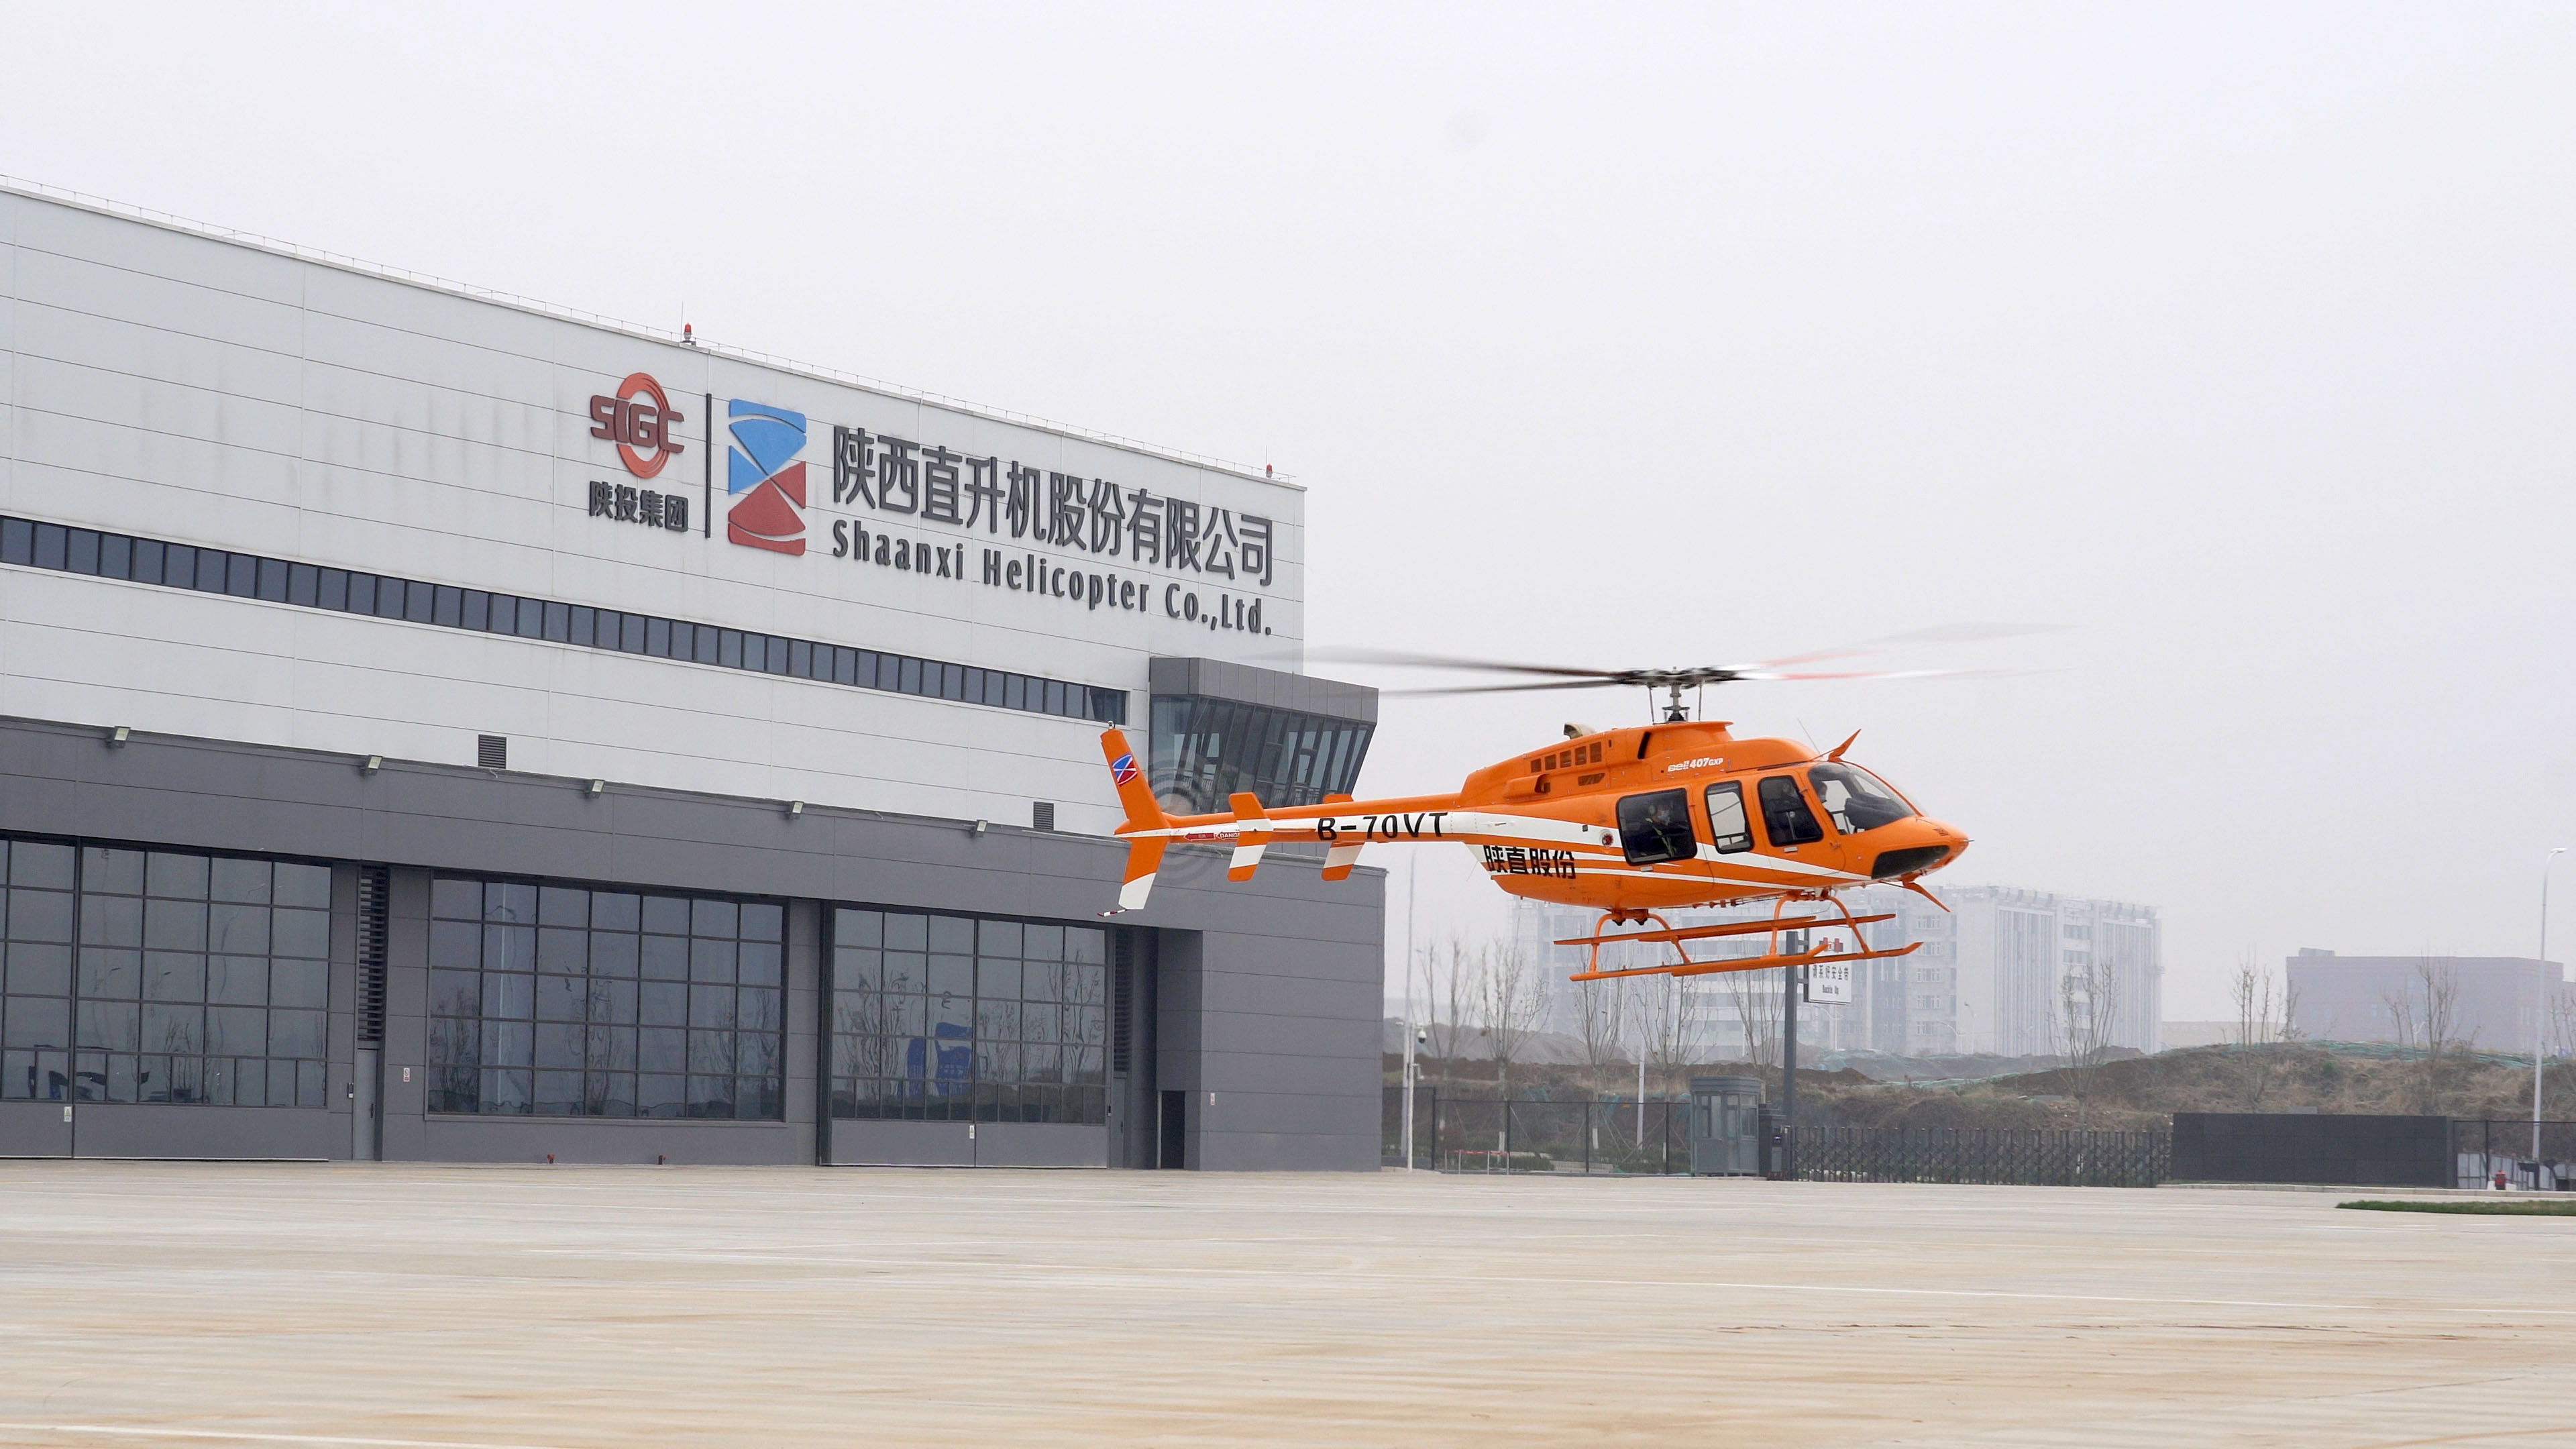 本次贝尔407直升机五年定检工作历时1个月完成,主要涵盖贝尔407机型